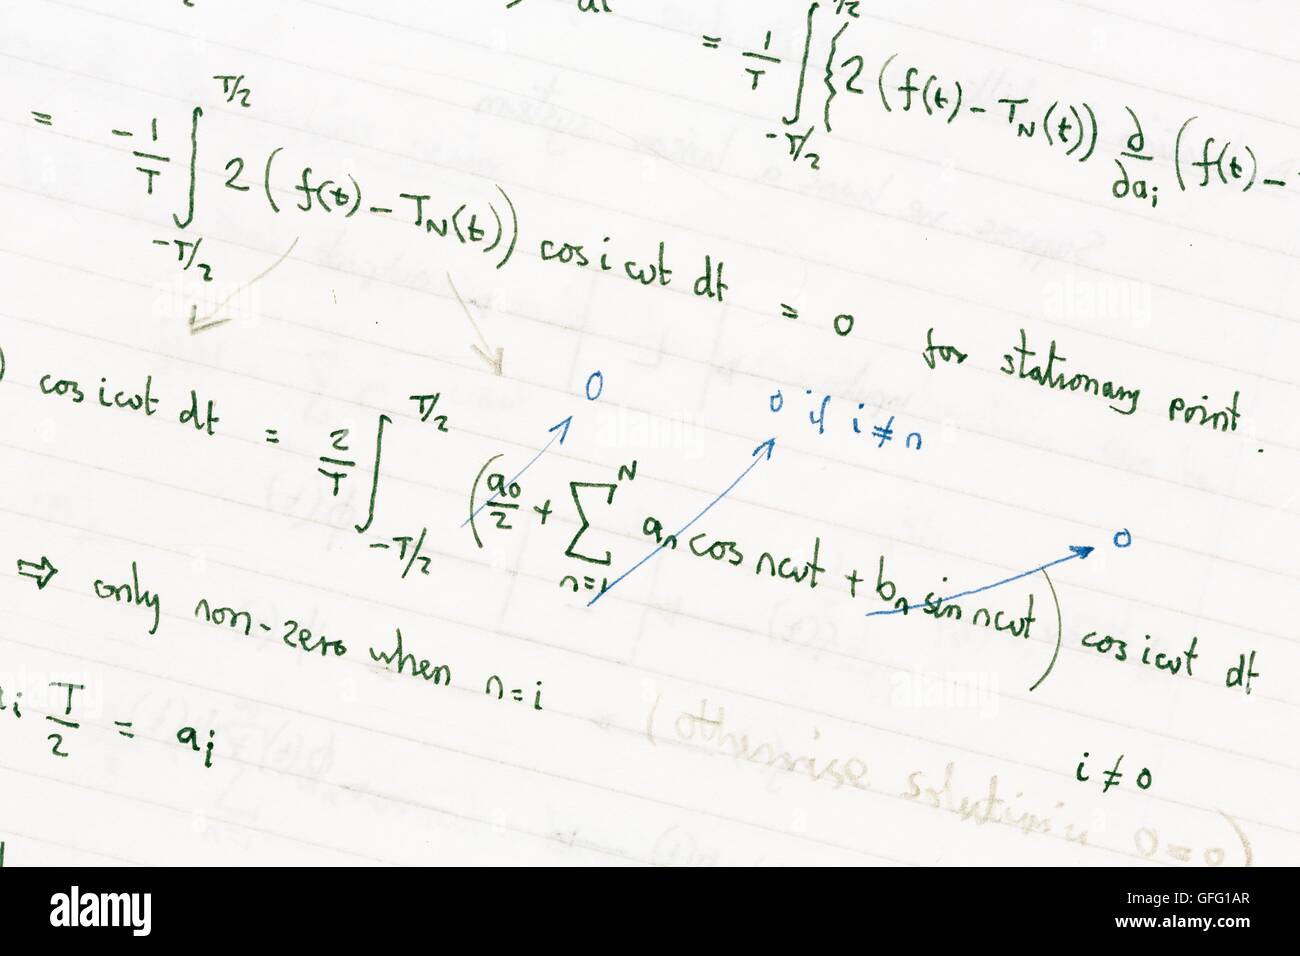 Devoirs de mathématiques montrant des formules mathématiques manuscrites Banque D'Images